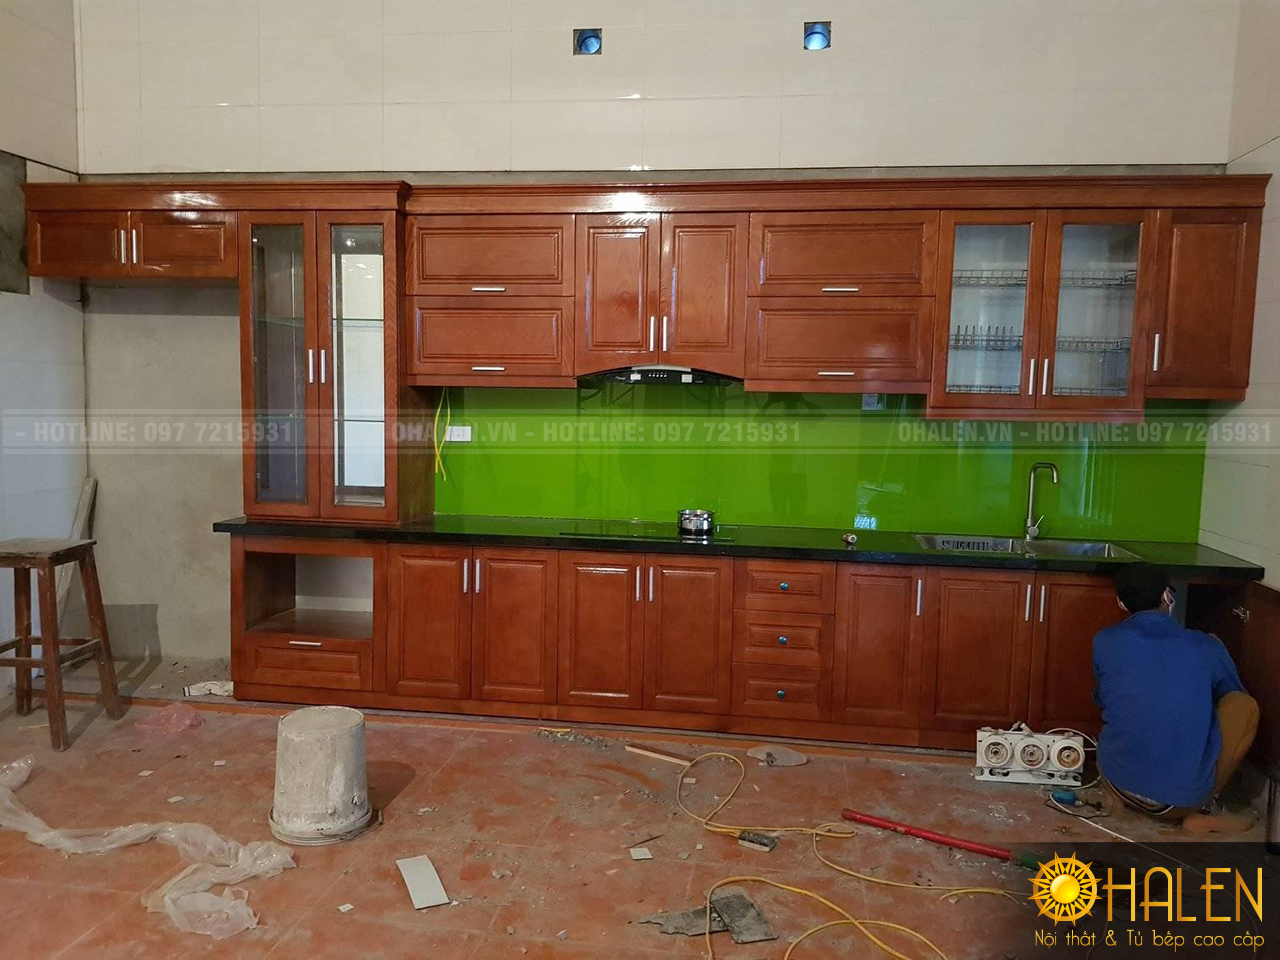 OHALEN thi công hoàn thiện mẫu tủ bếp gỗ Xoan Đào cho khách hàng tại Gia Lâm, Hà Nội